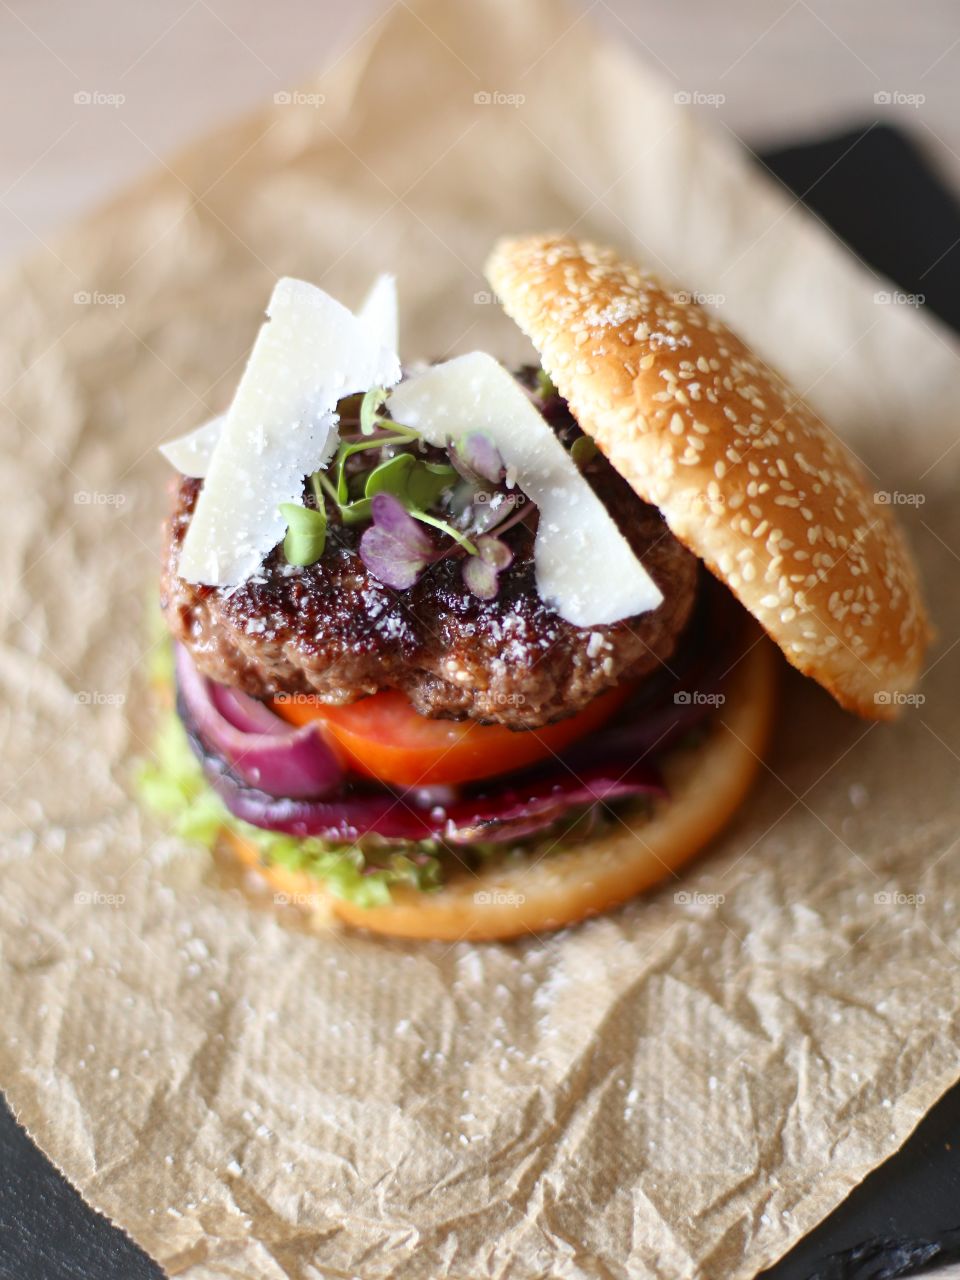 Close-up of of hamburger